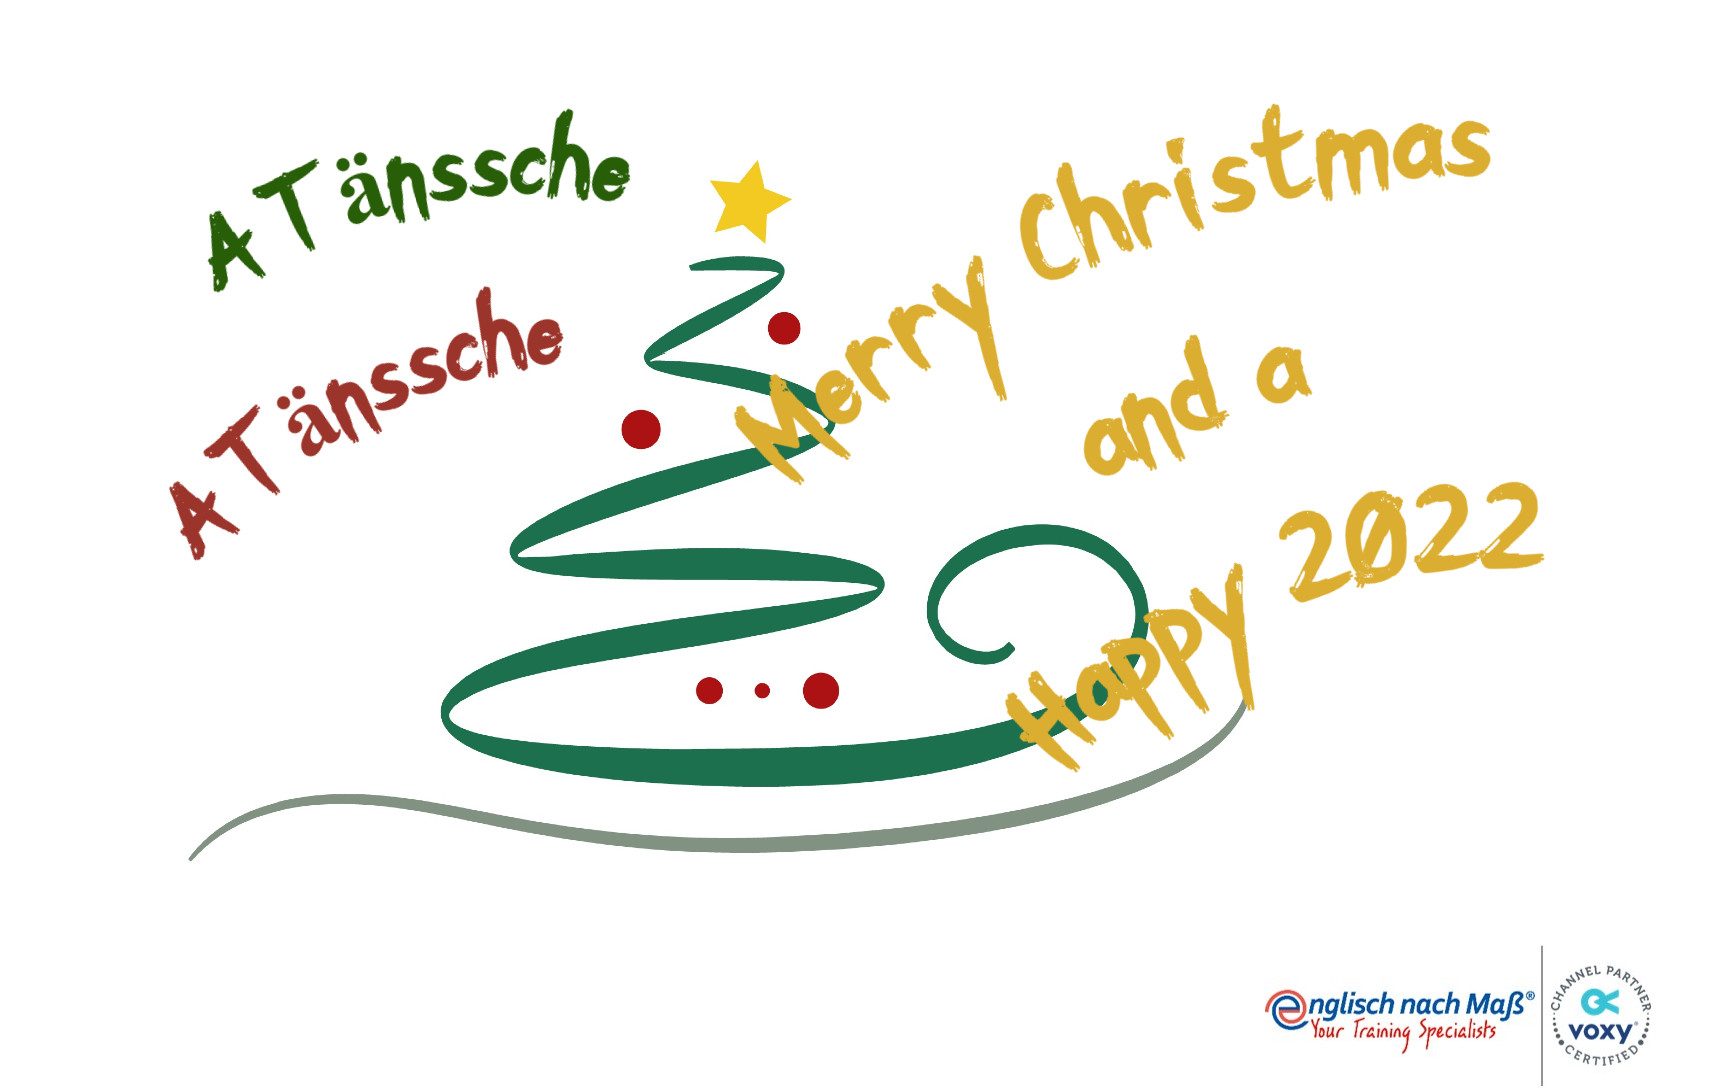 Bild: Christmas Tree Text: A Tännsche A Tännsche Merry Christmas and a Happy 2022